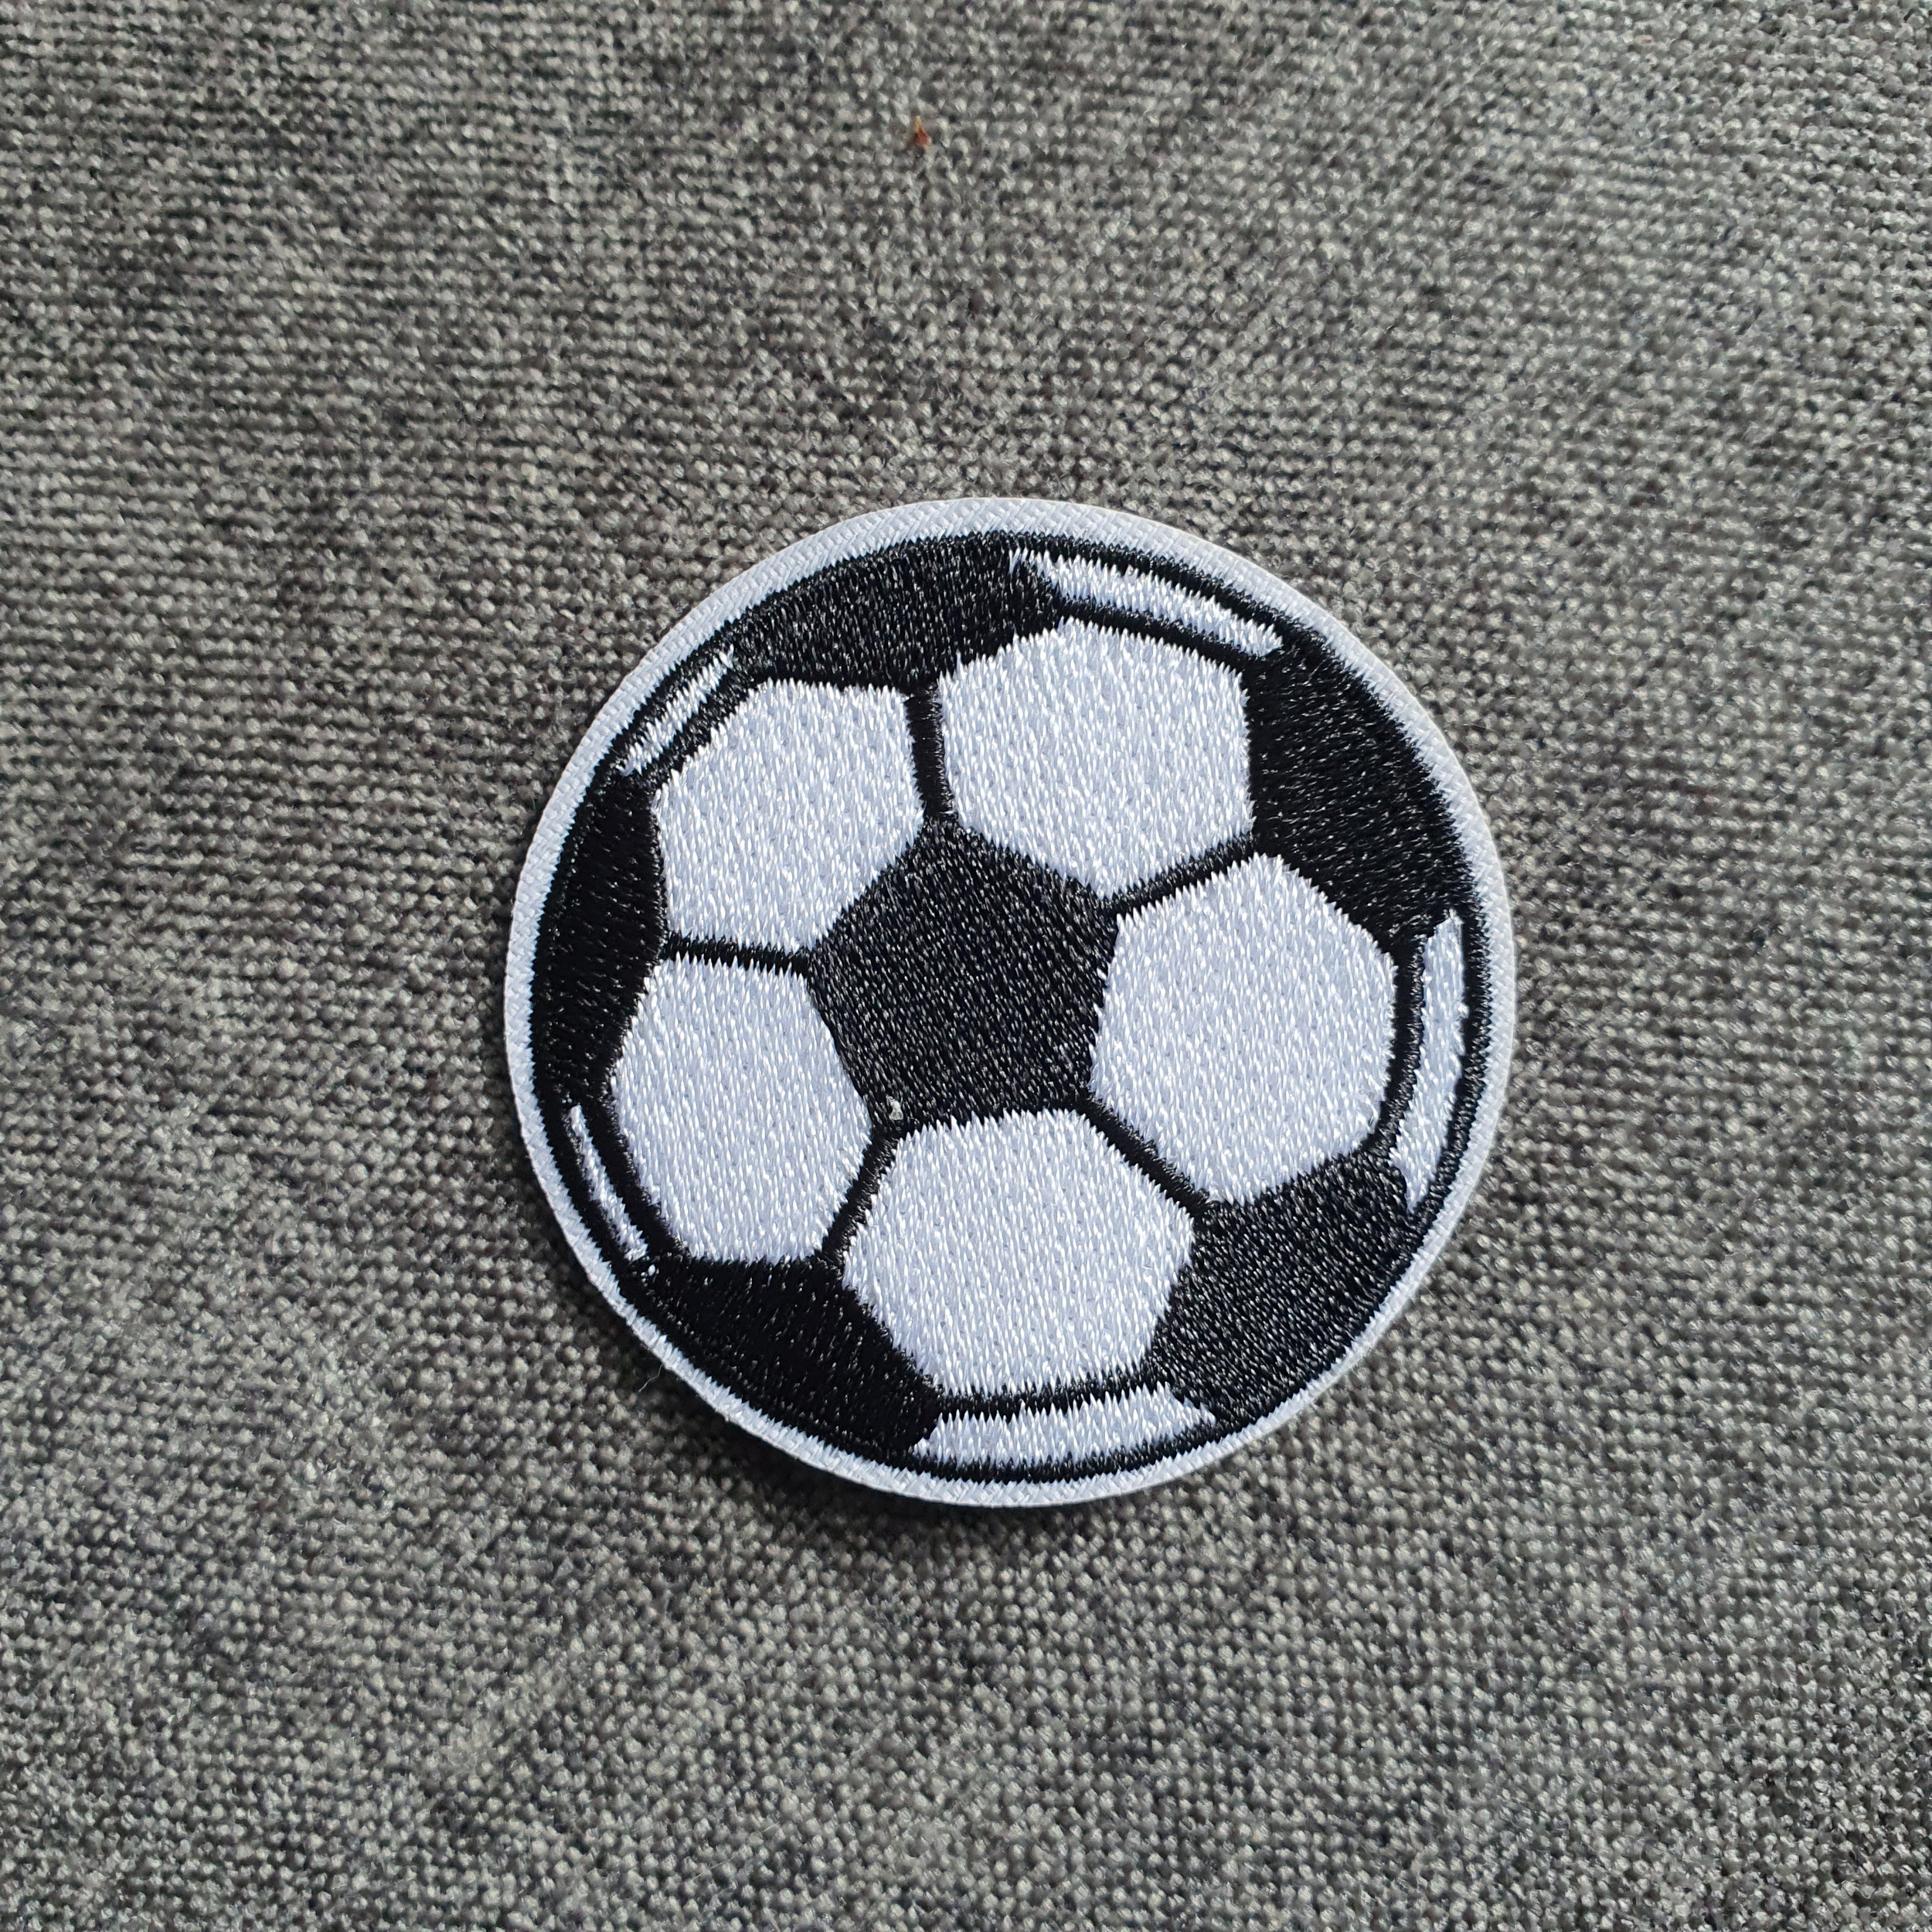 Patch thermocollant ballon de foot noir et blanc